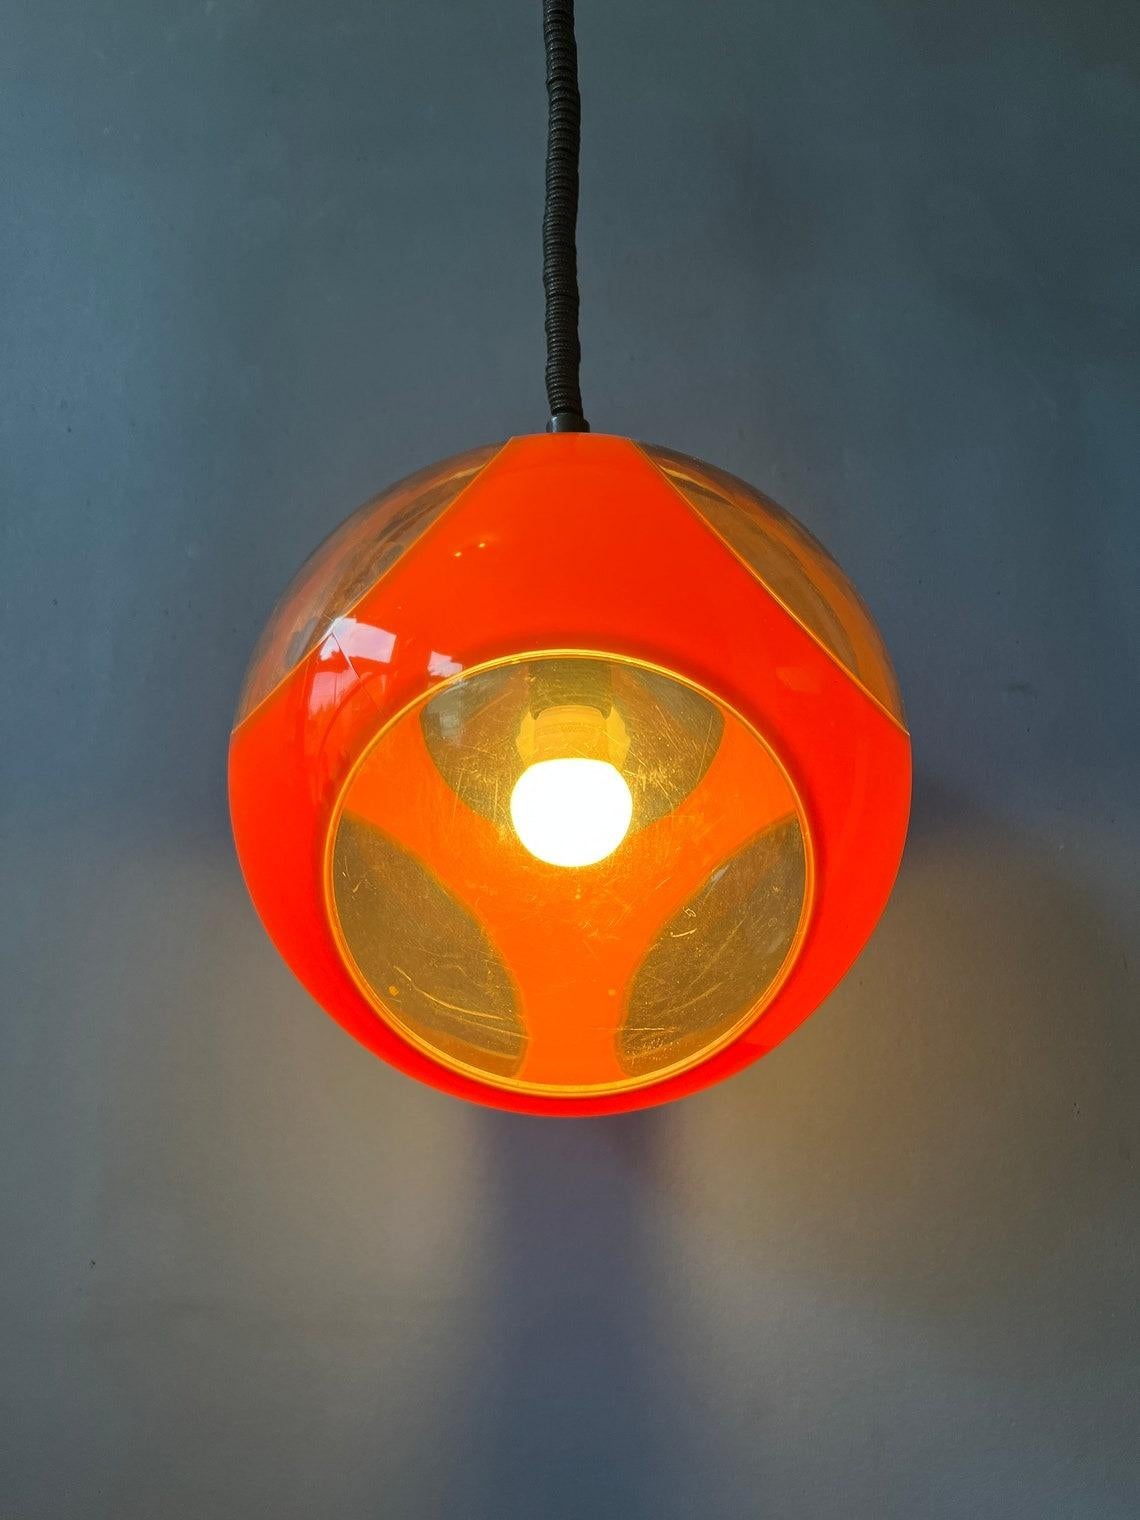 Lampe suspendue iconique à œil d'insecte orange de Massive, souvent attribuée à Luigi Colani. La lampe nécessite une ampoule E27/26.

Informations complémentaires :
Matériaux : Métal, plastique
Période : 1970s
Dimensions : ø Abat-jour : 28